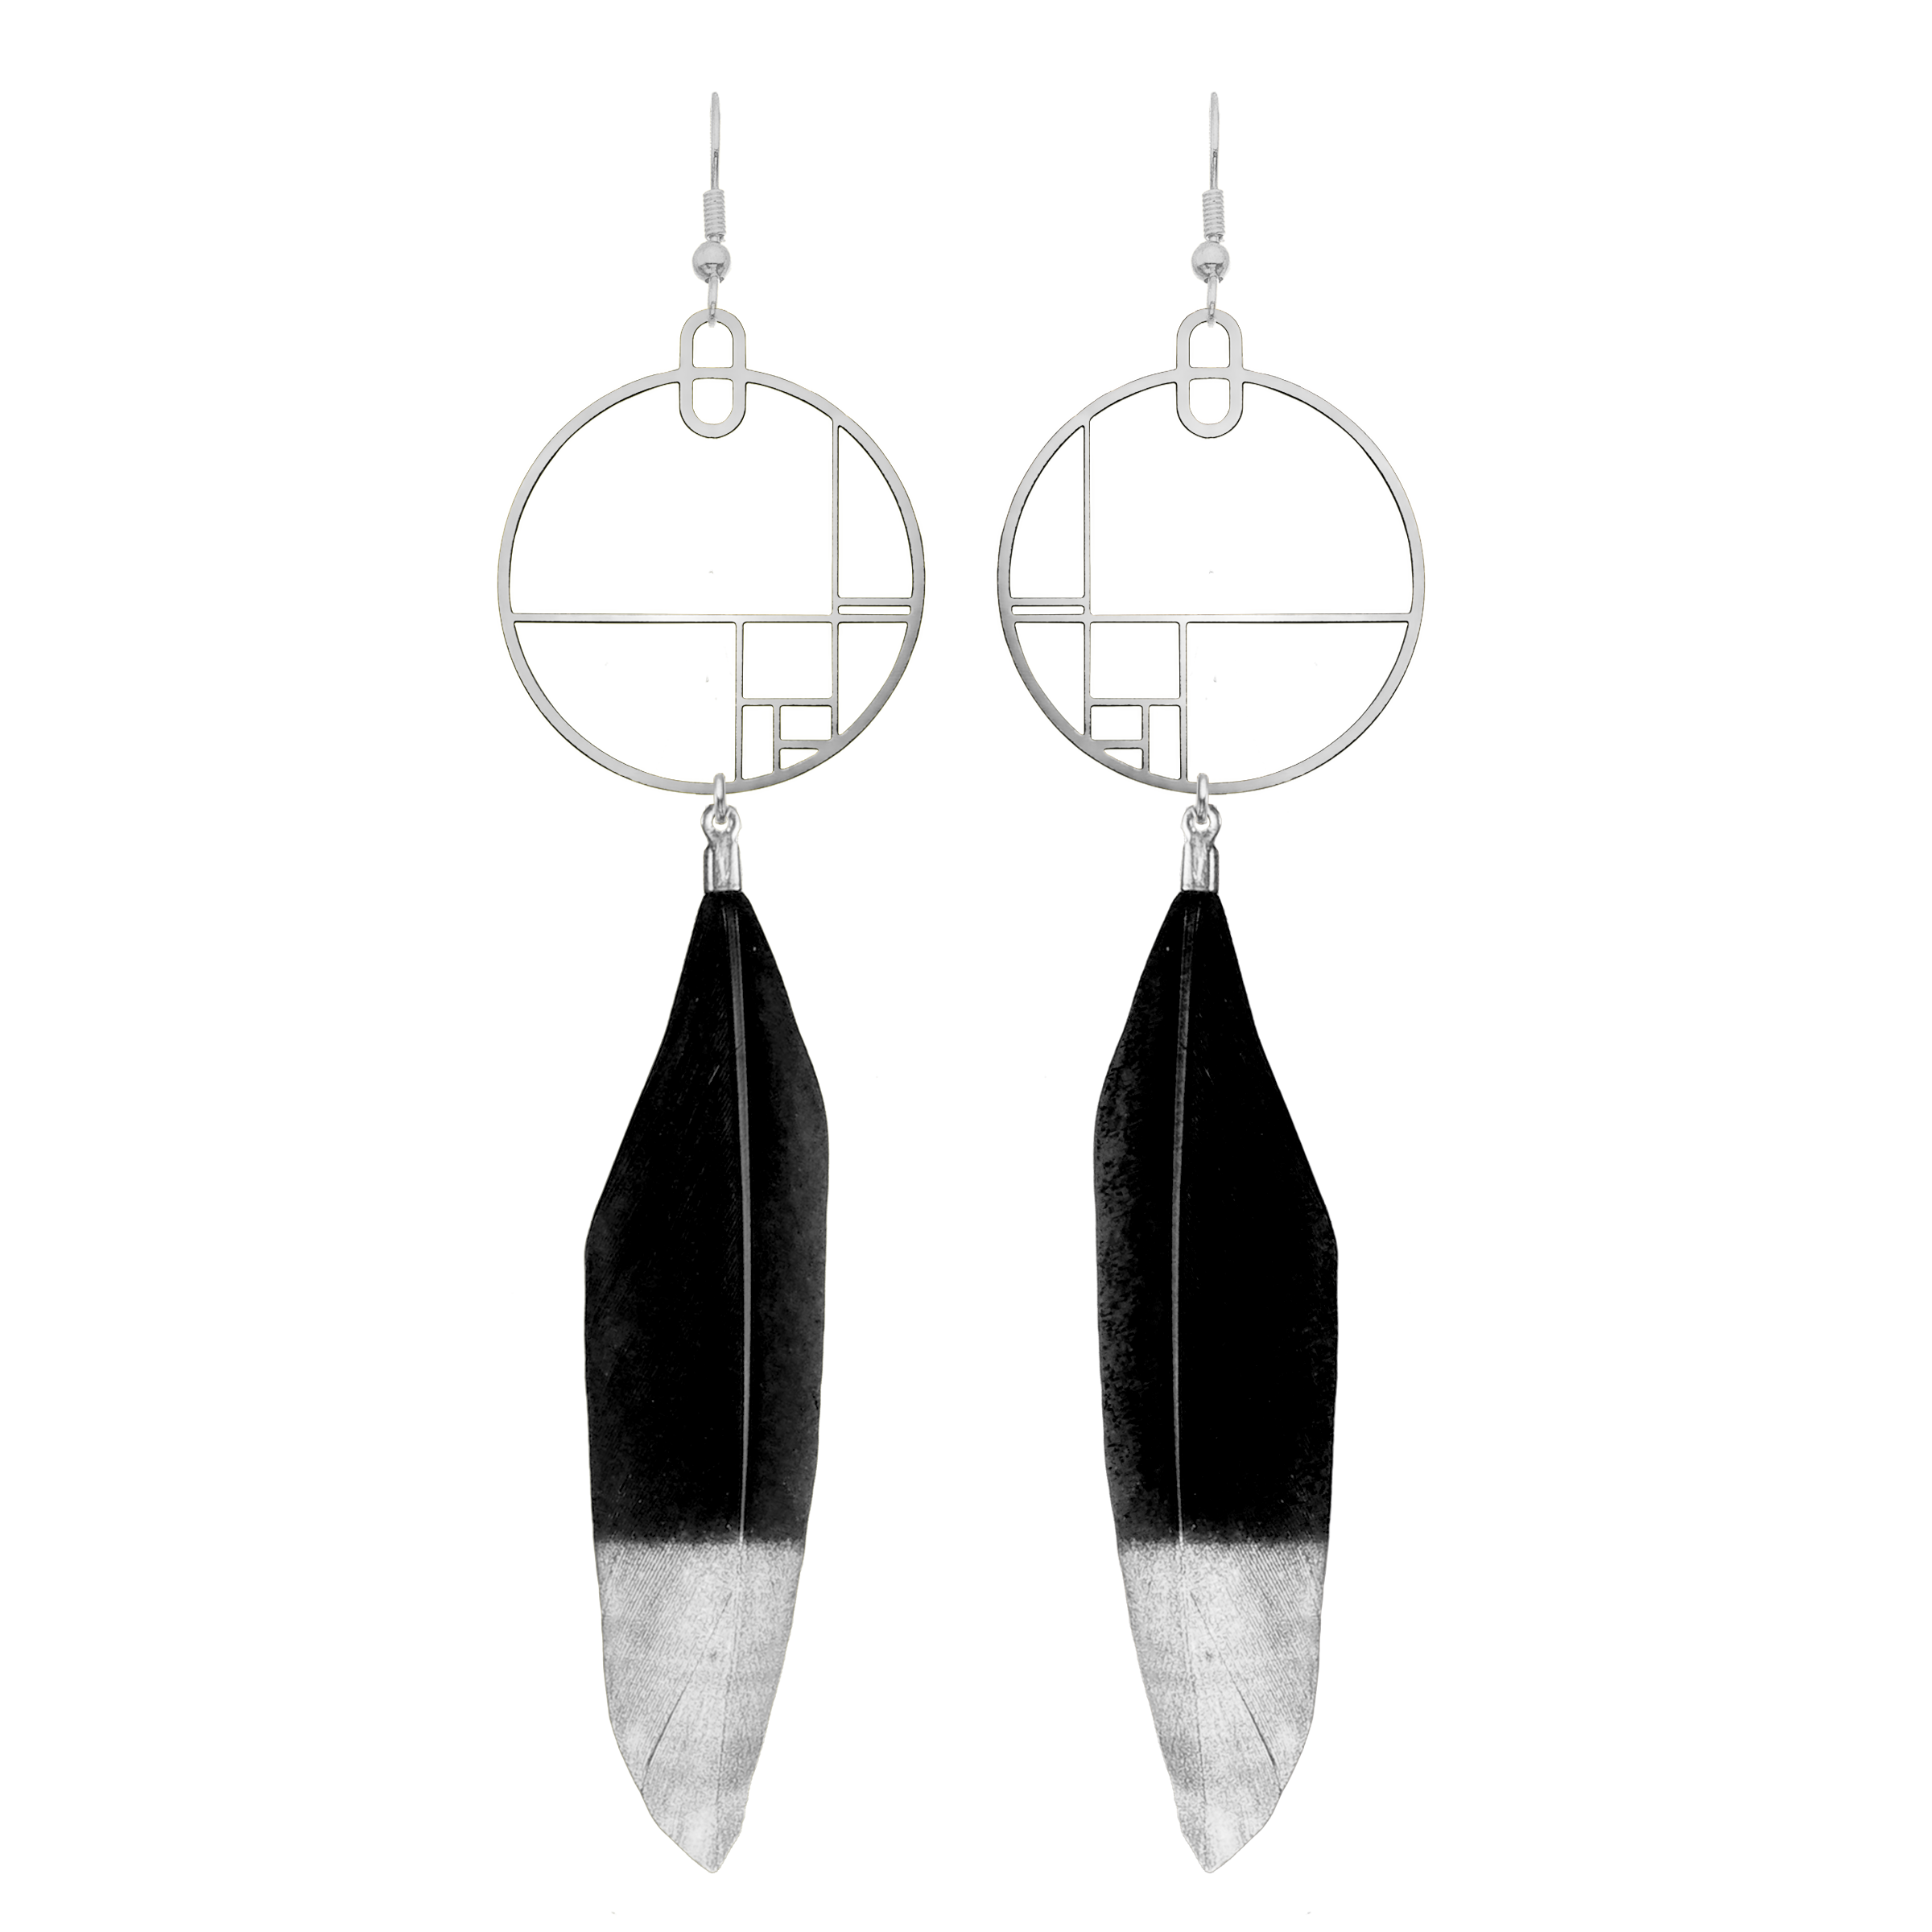 Art Jewelry - Modern Art Earrings With Feathers